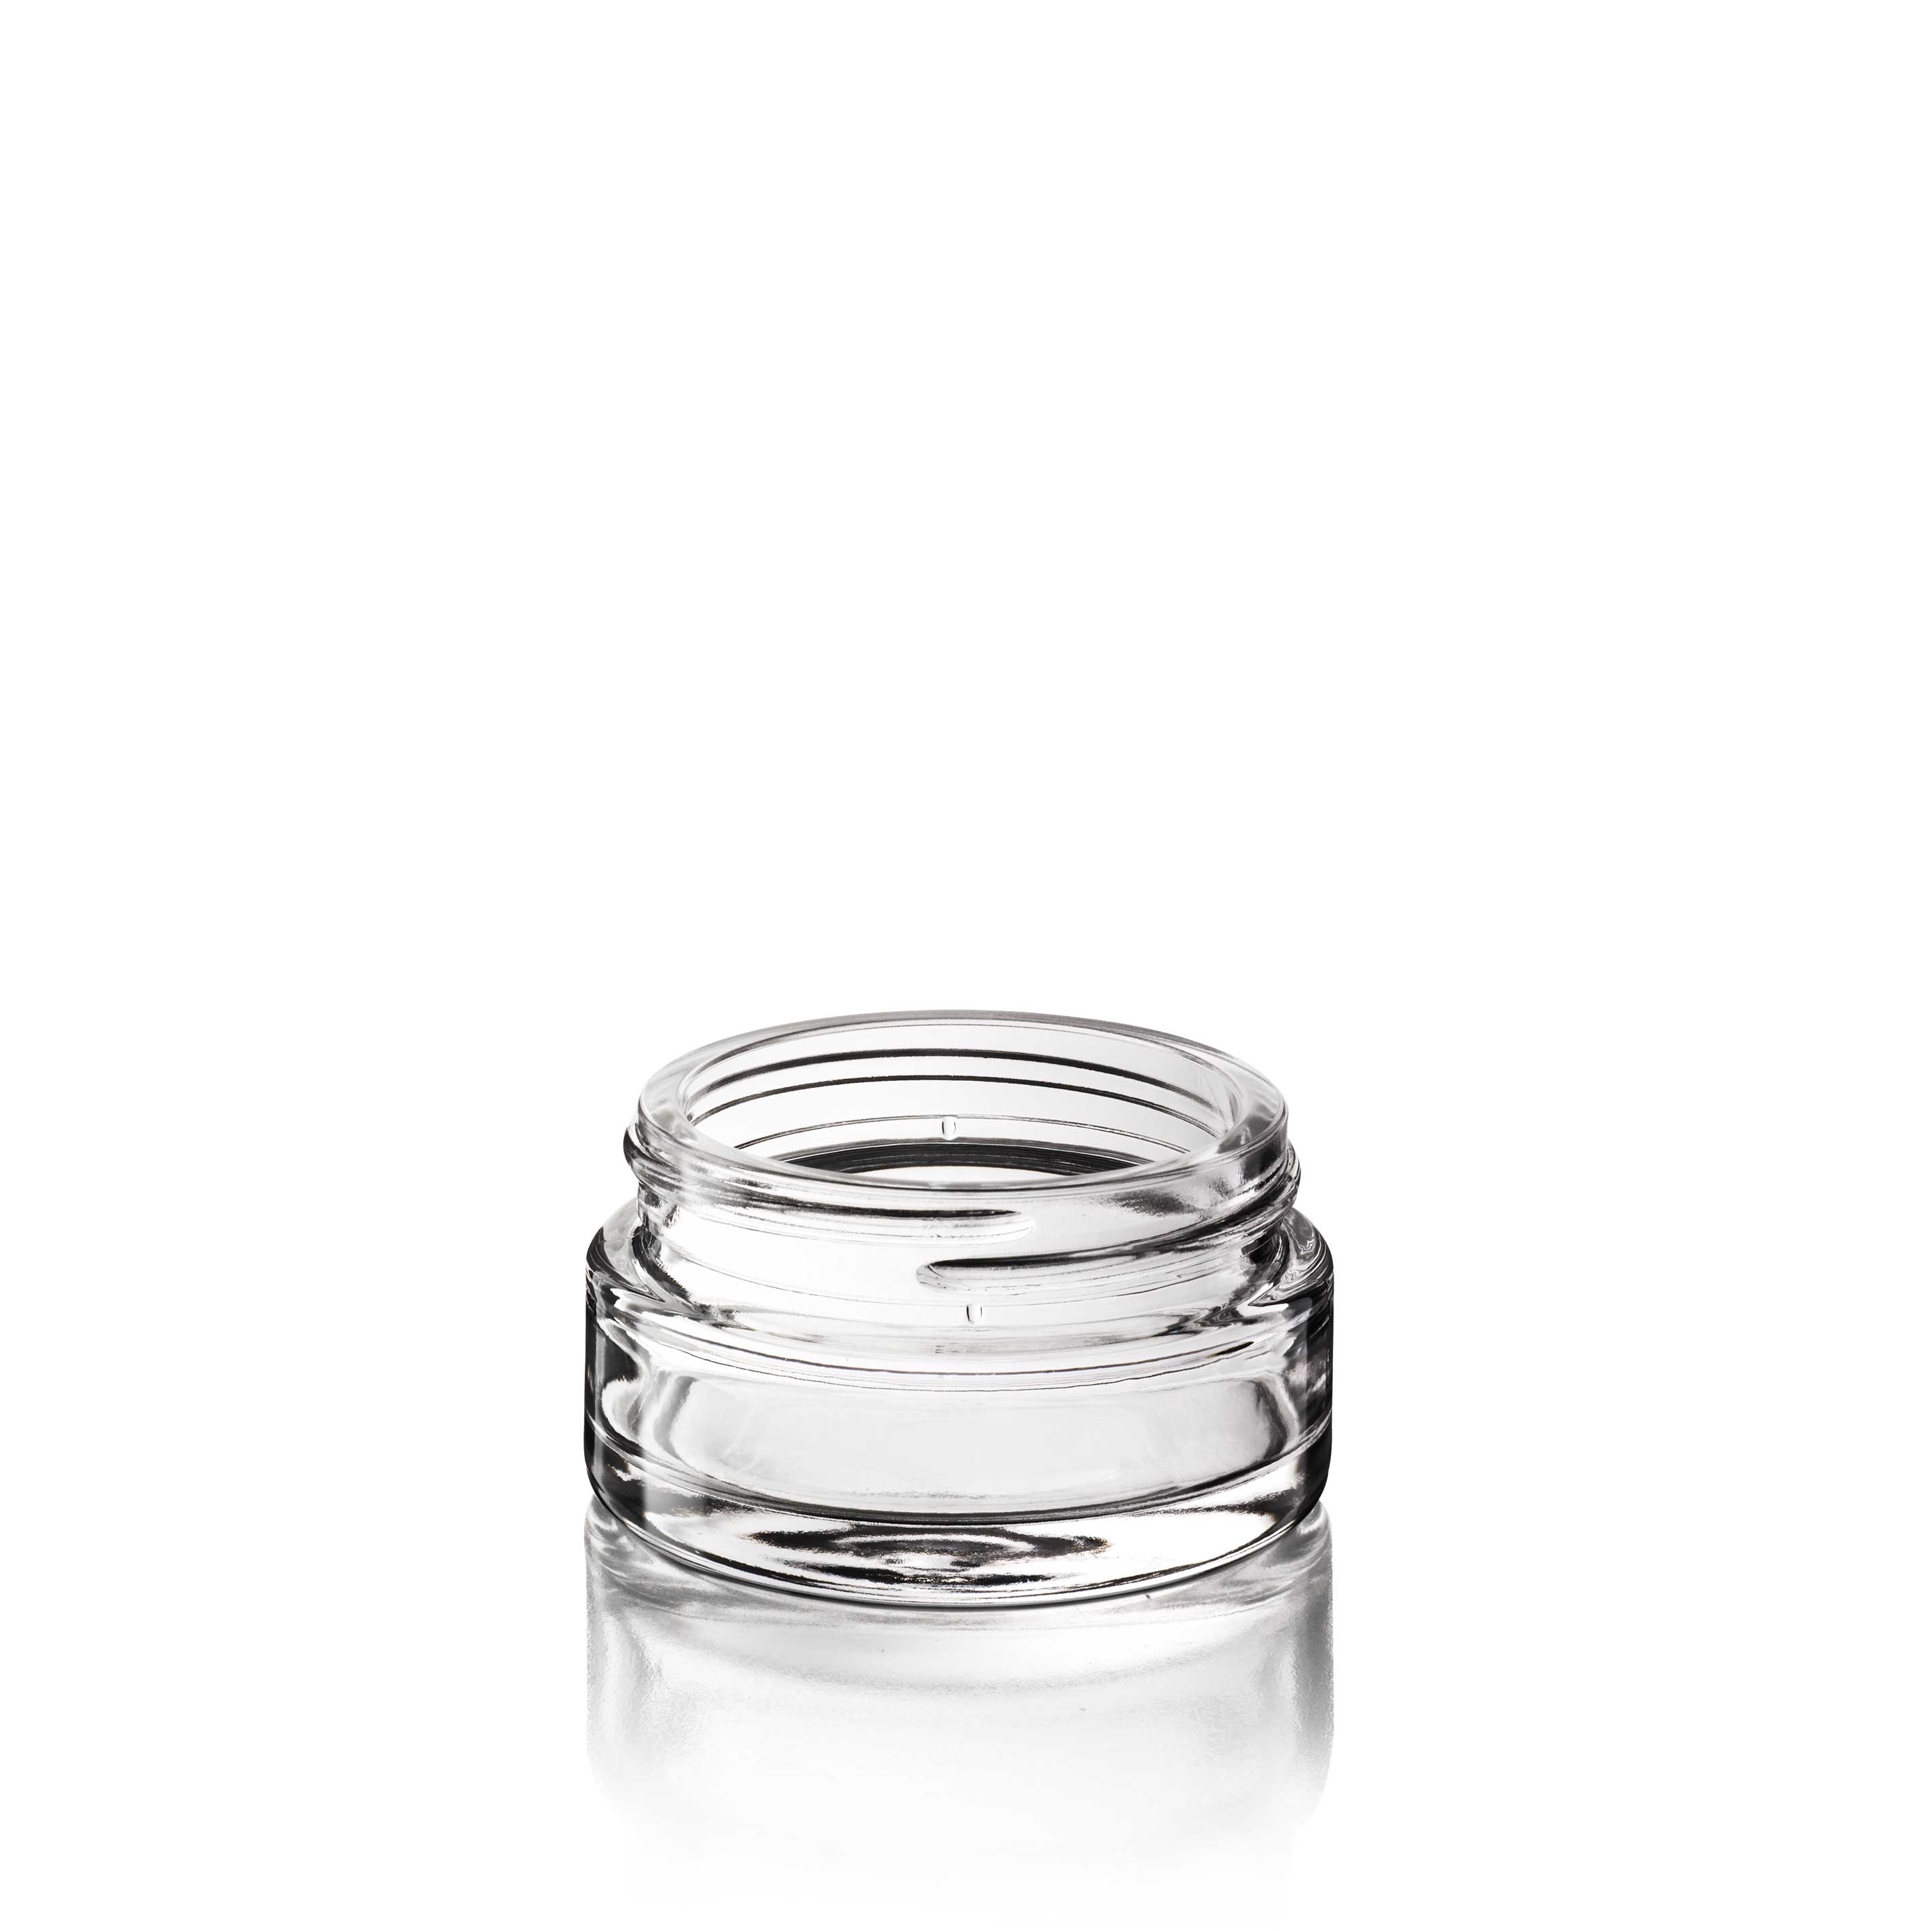 Cosmetic jar Bryn 30 ml, 48 special thread, Flint